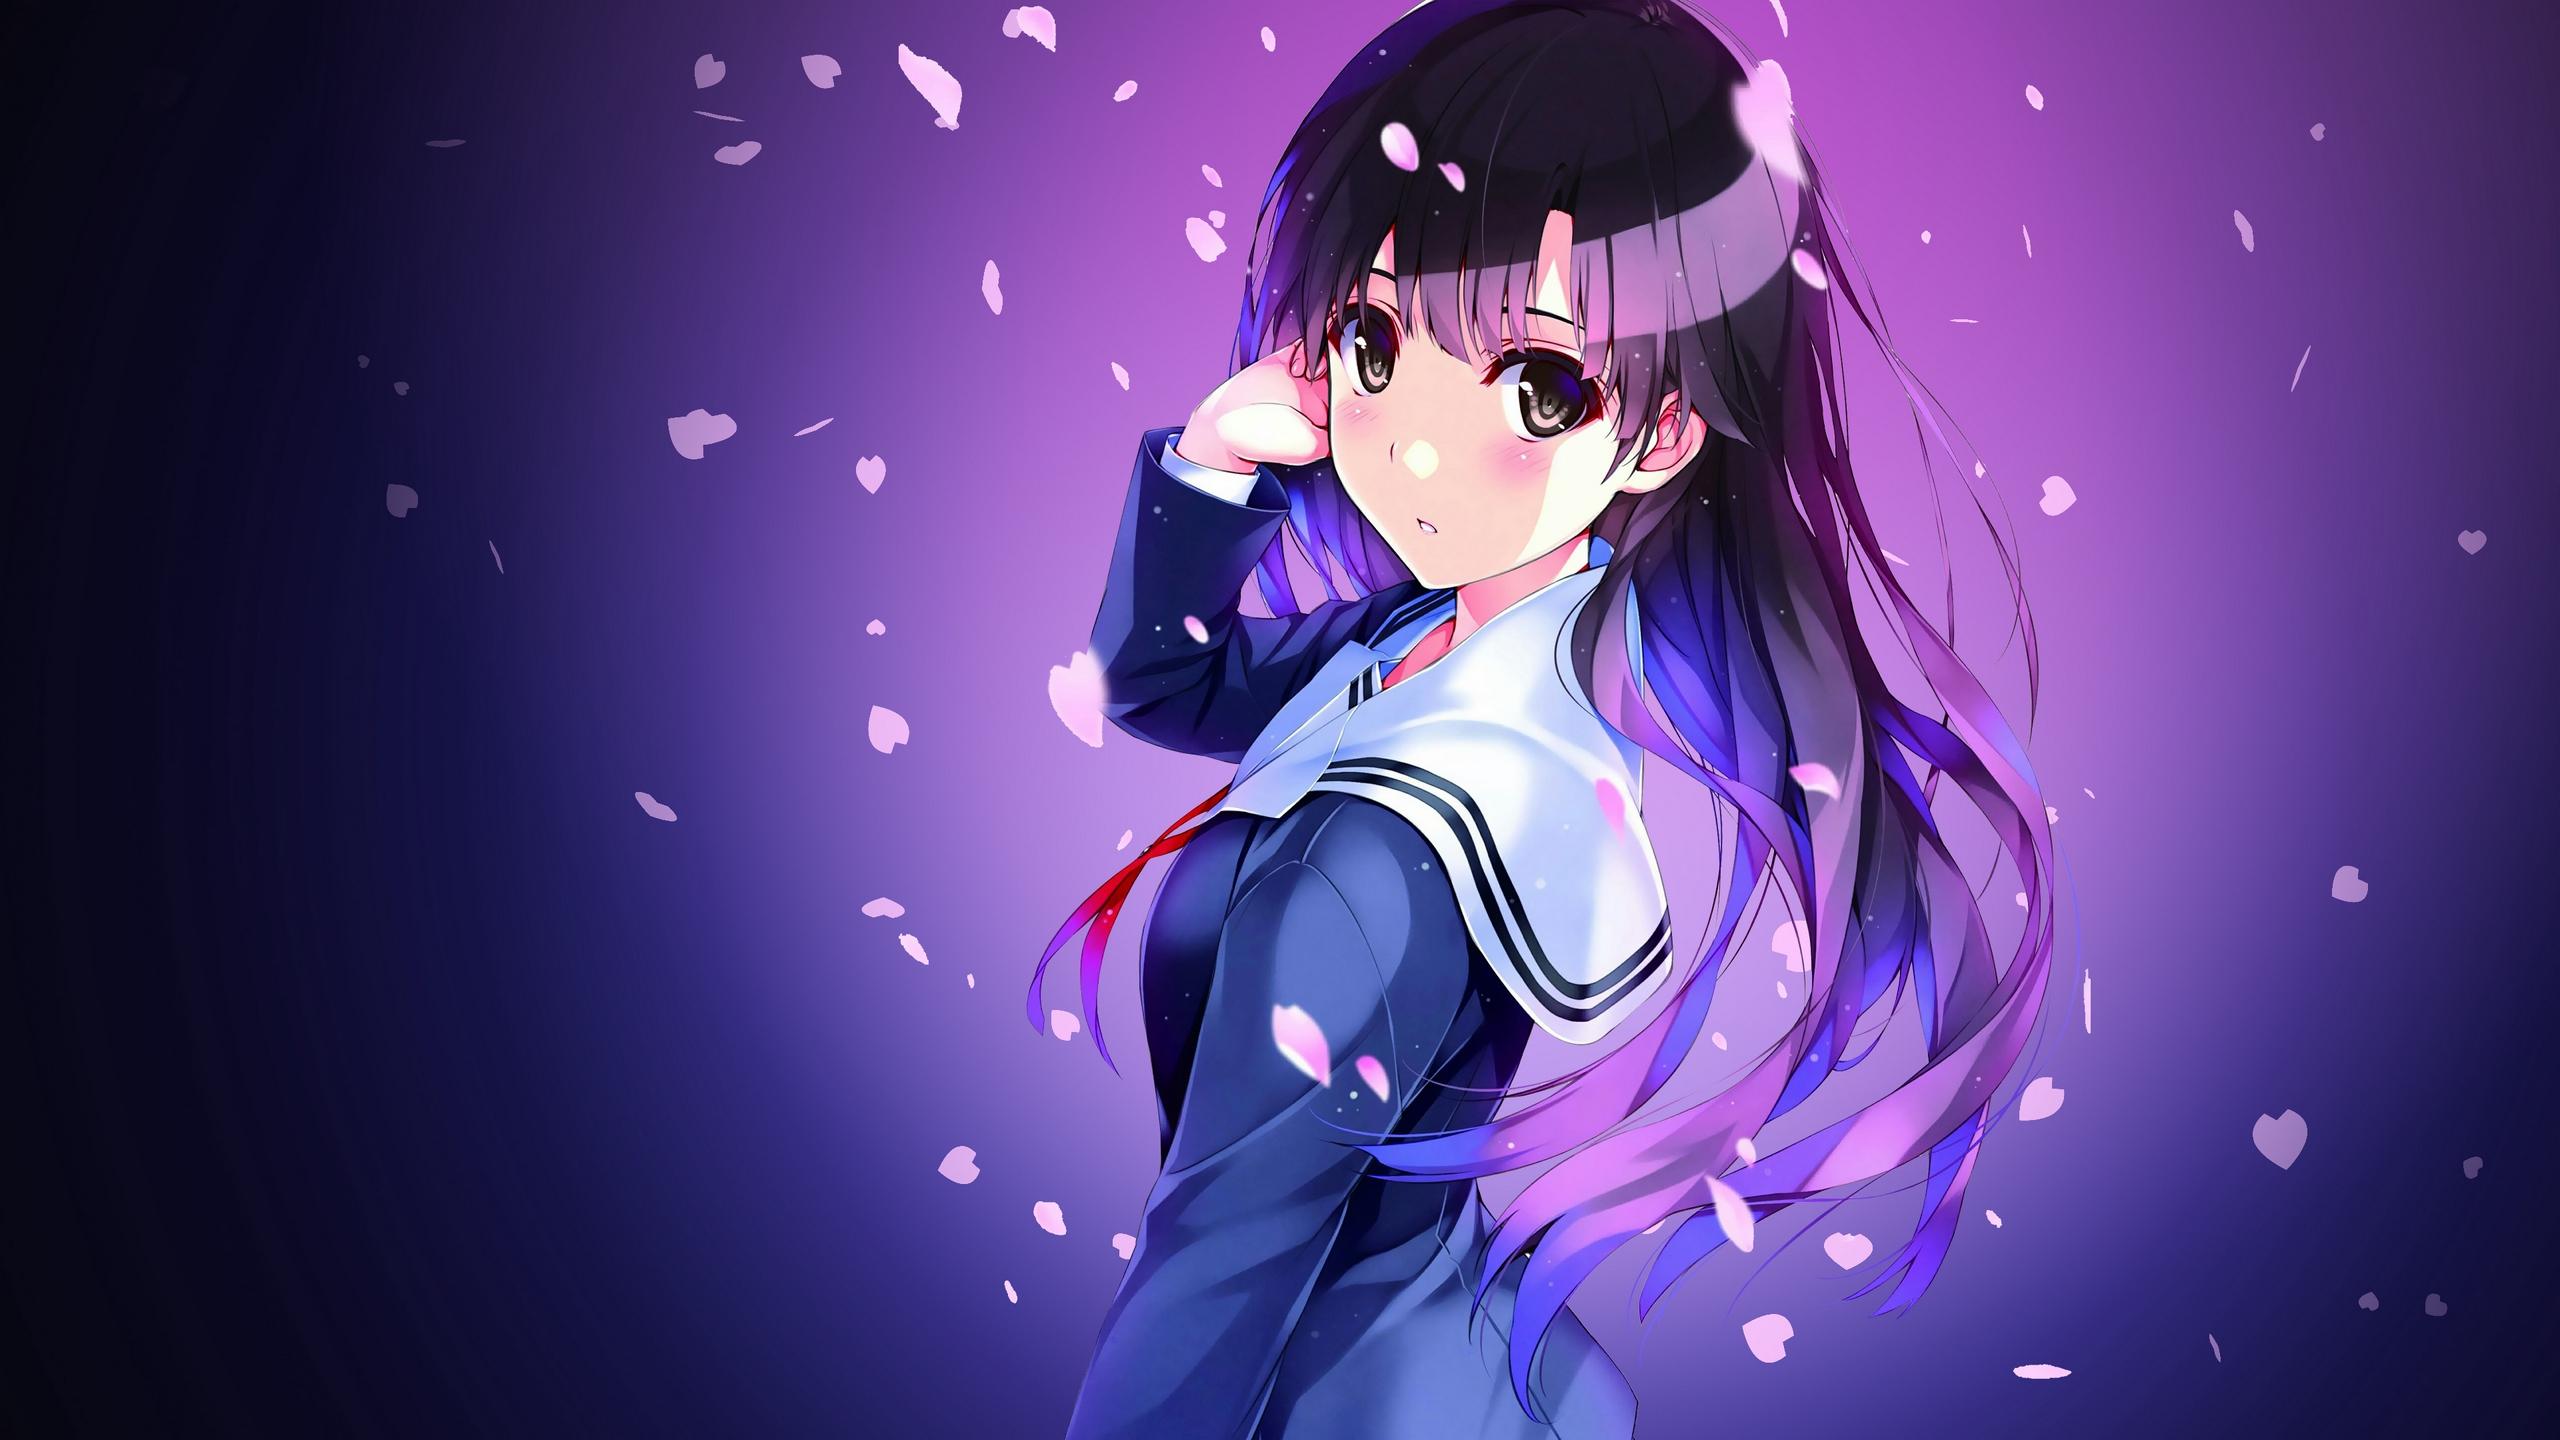 Download wallpaper 2560x1440 anime, schoolgirl, uniform